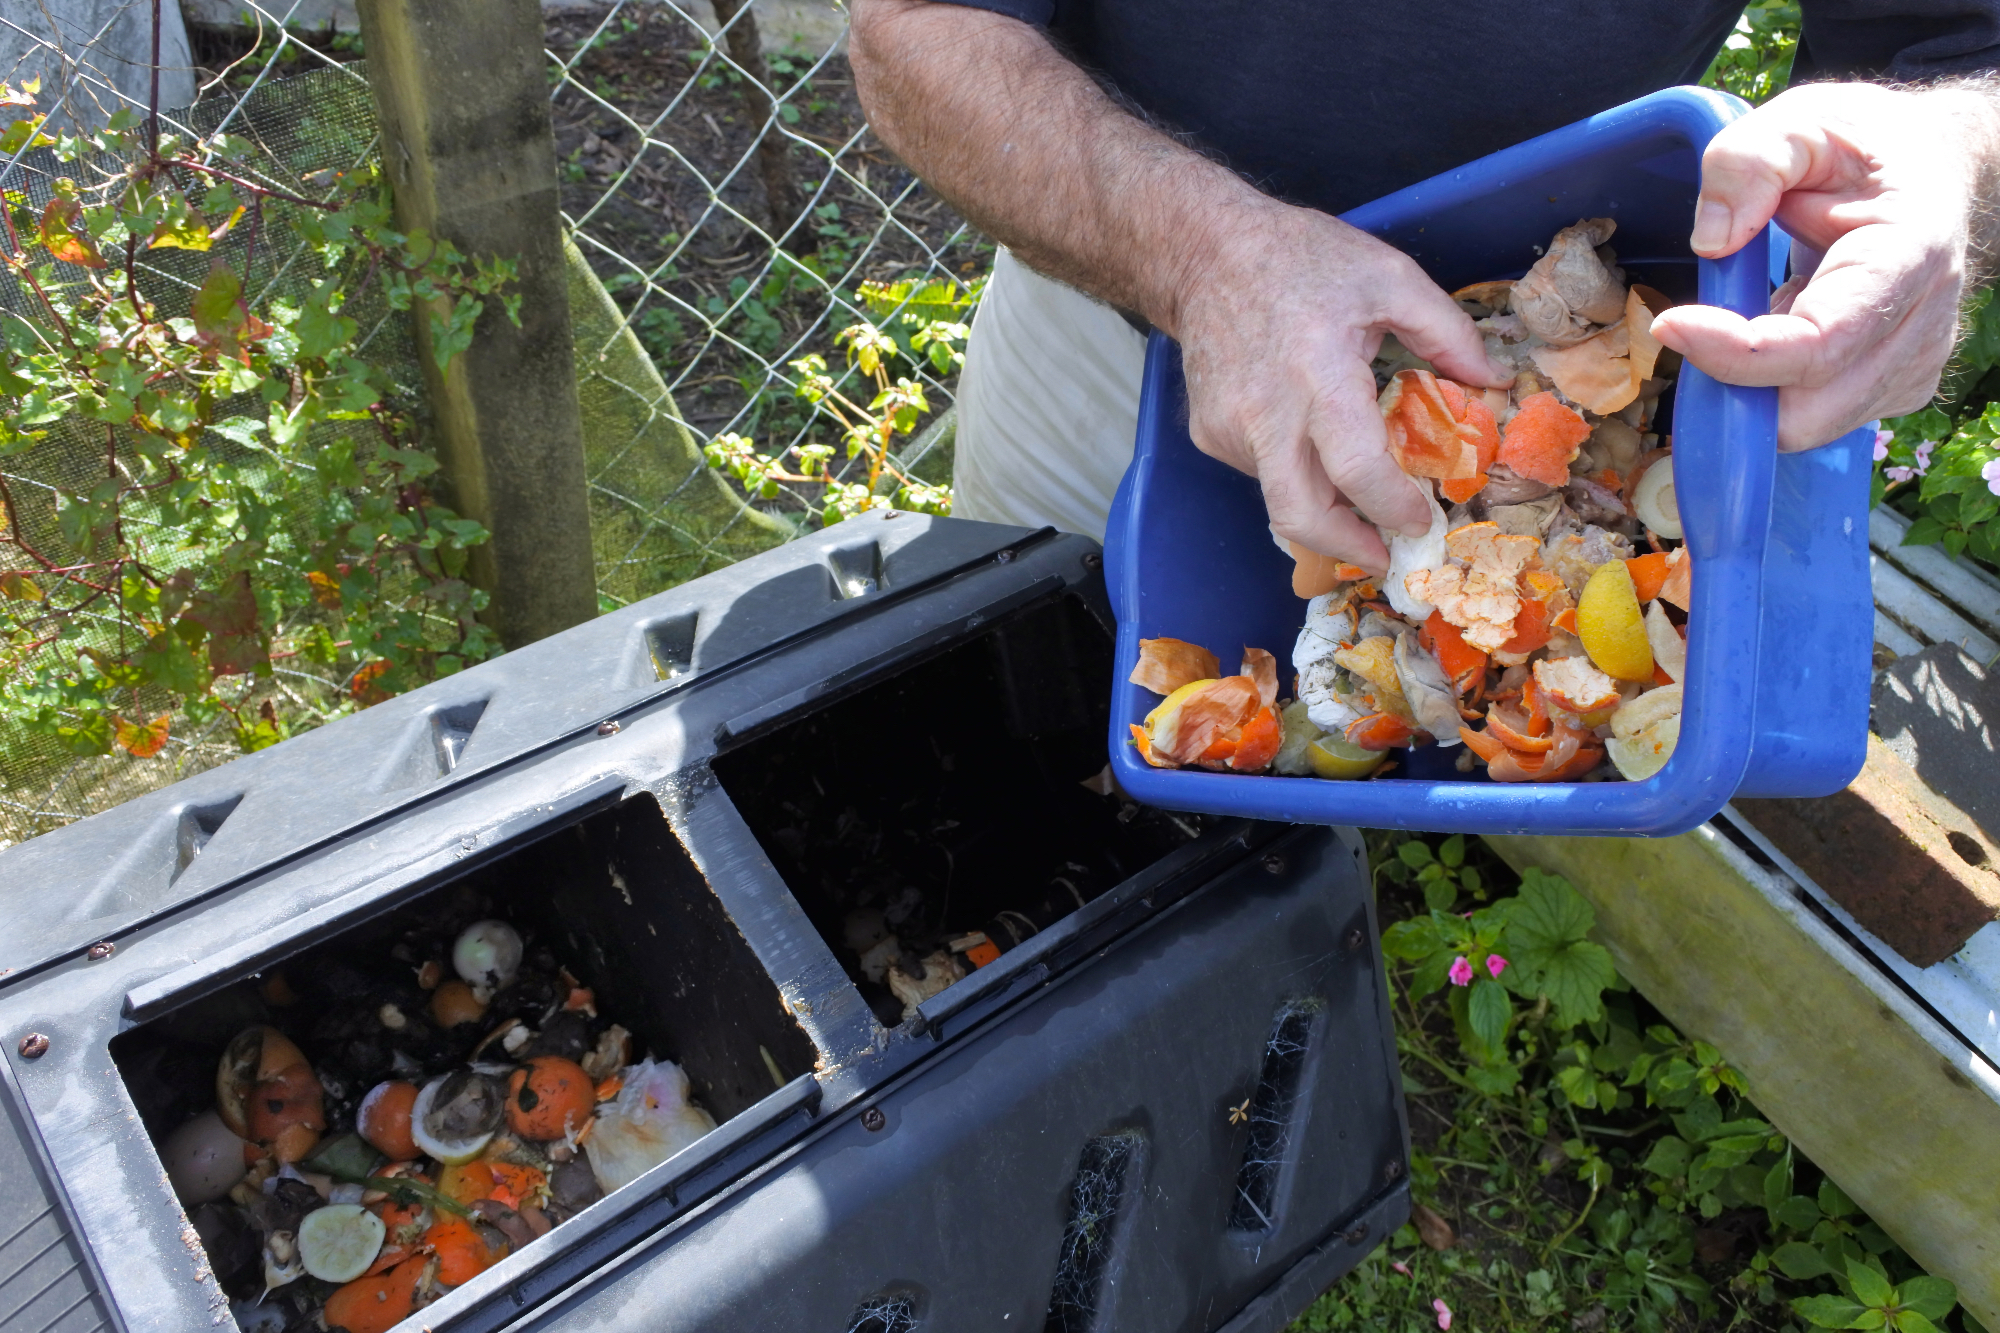 Kompostniki so lahko izvrstni pripomočki za pripravo gnojila